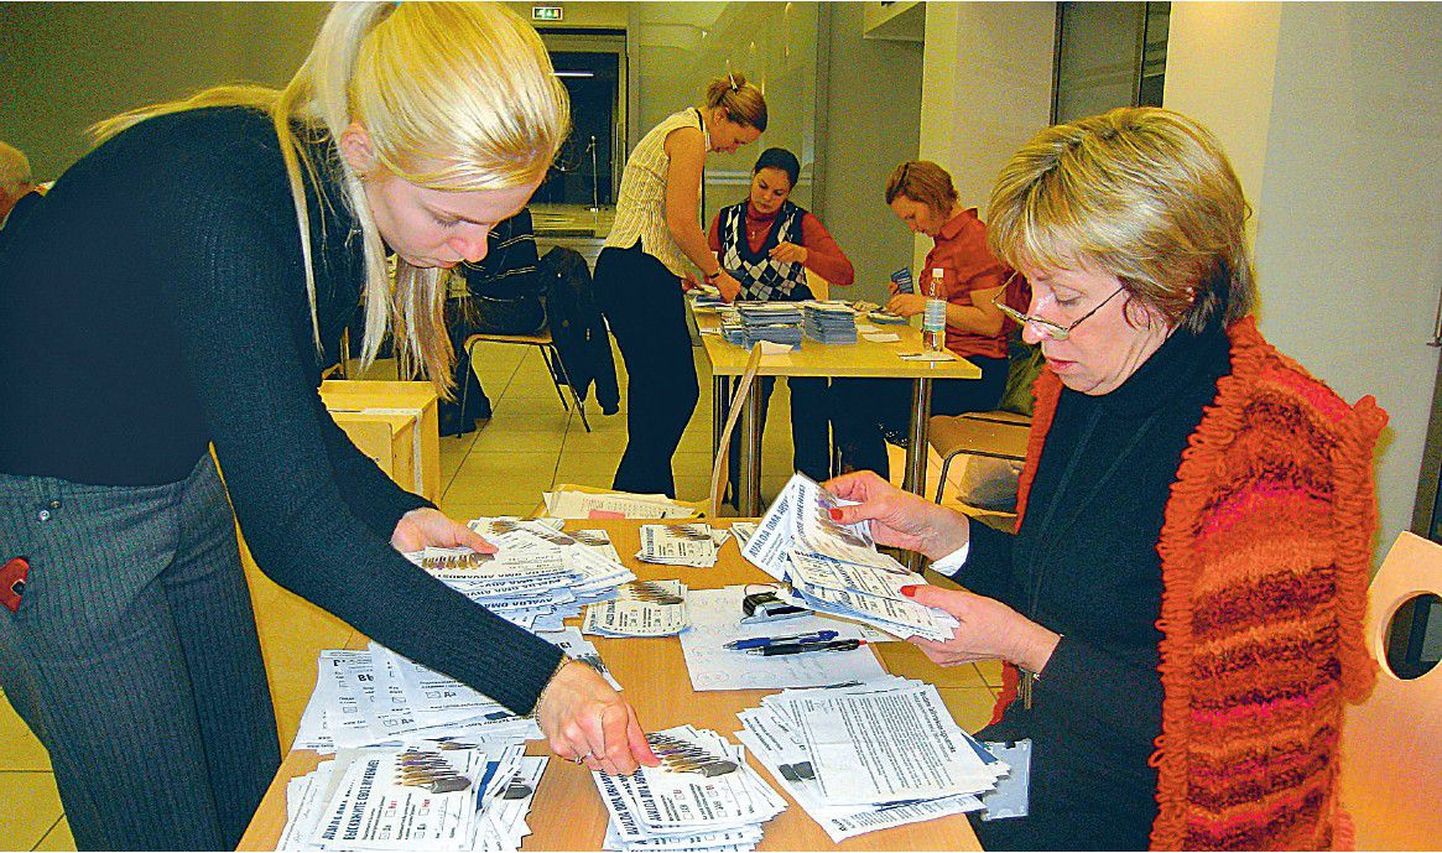 Pabersedelitel häälte ülelugemine kolmapäeva õhtul Tallinna linnavalitsuses. Kui paberil hääletanutest toetas pealinna haldusreformi keskerakondlikul viisil ligikaudu kolm viiendikku hääletanutest, siis internetis said reformi vastased napi võidu.